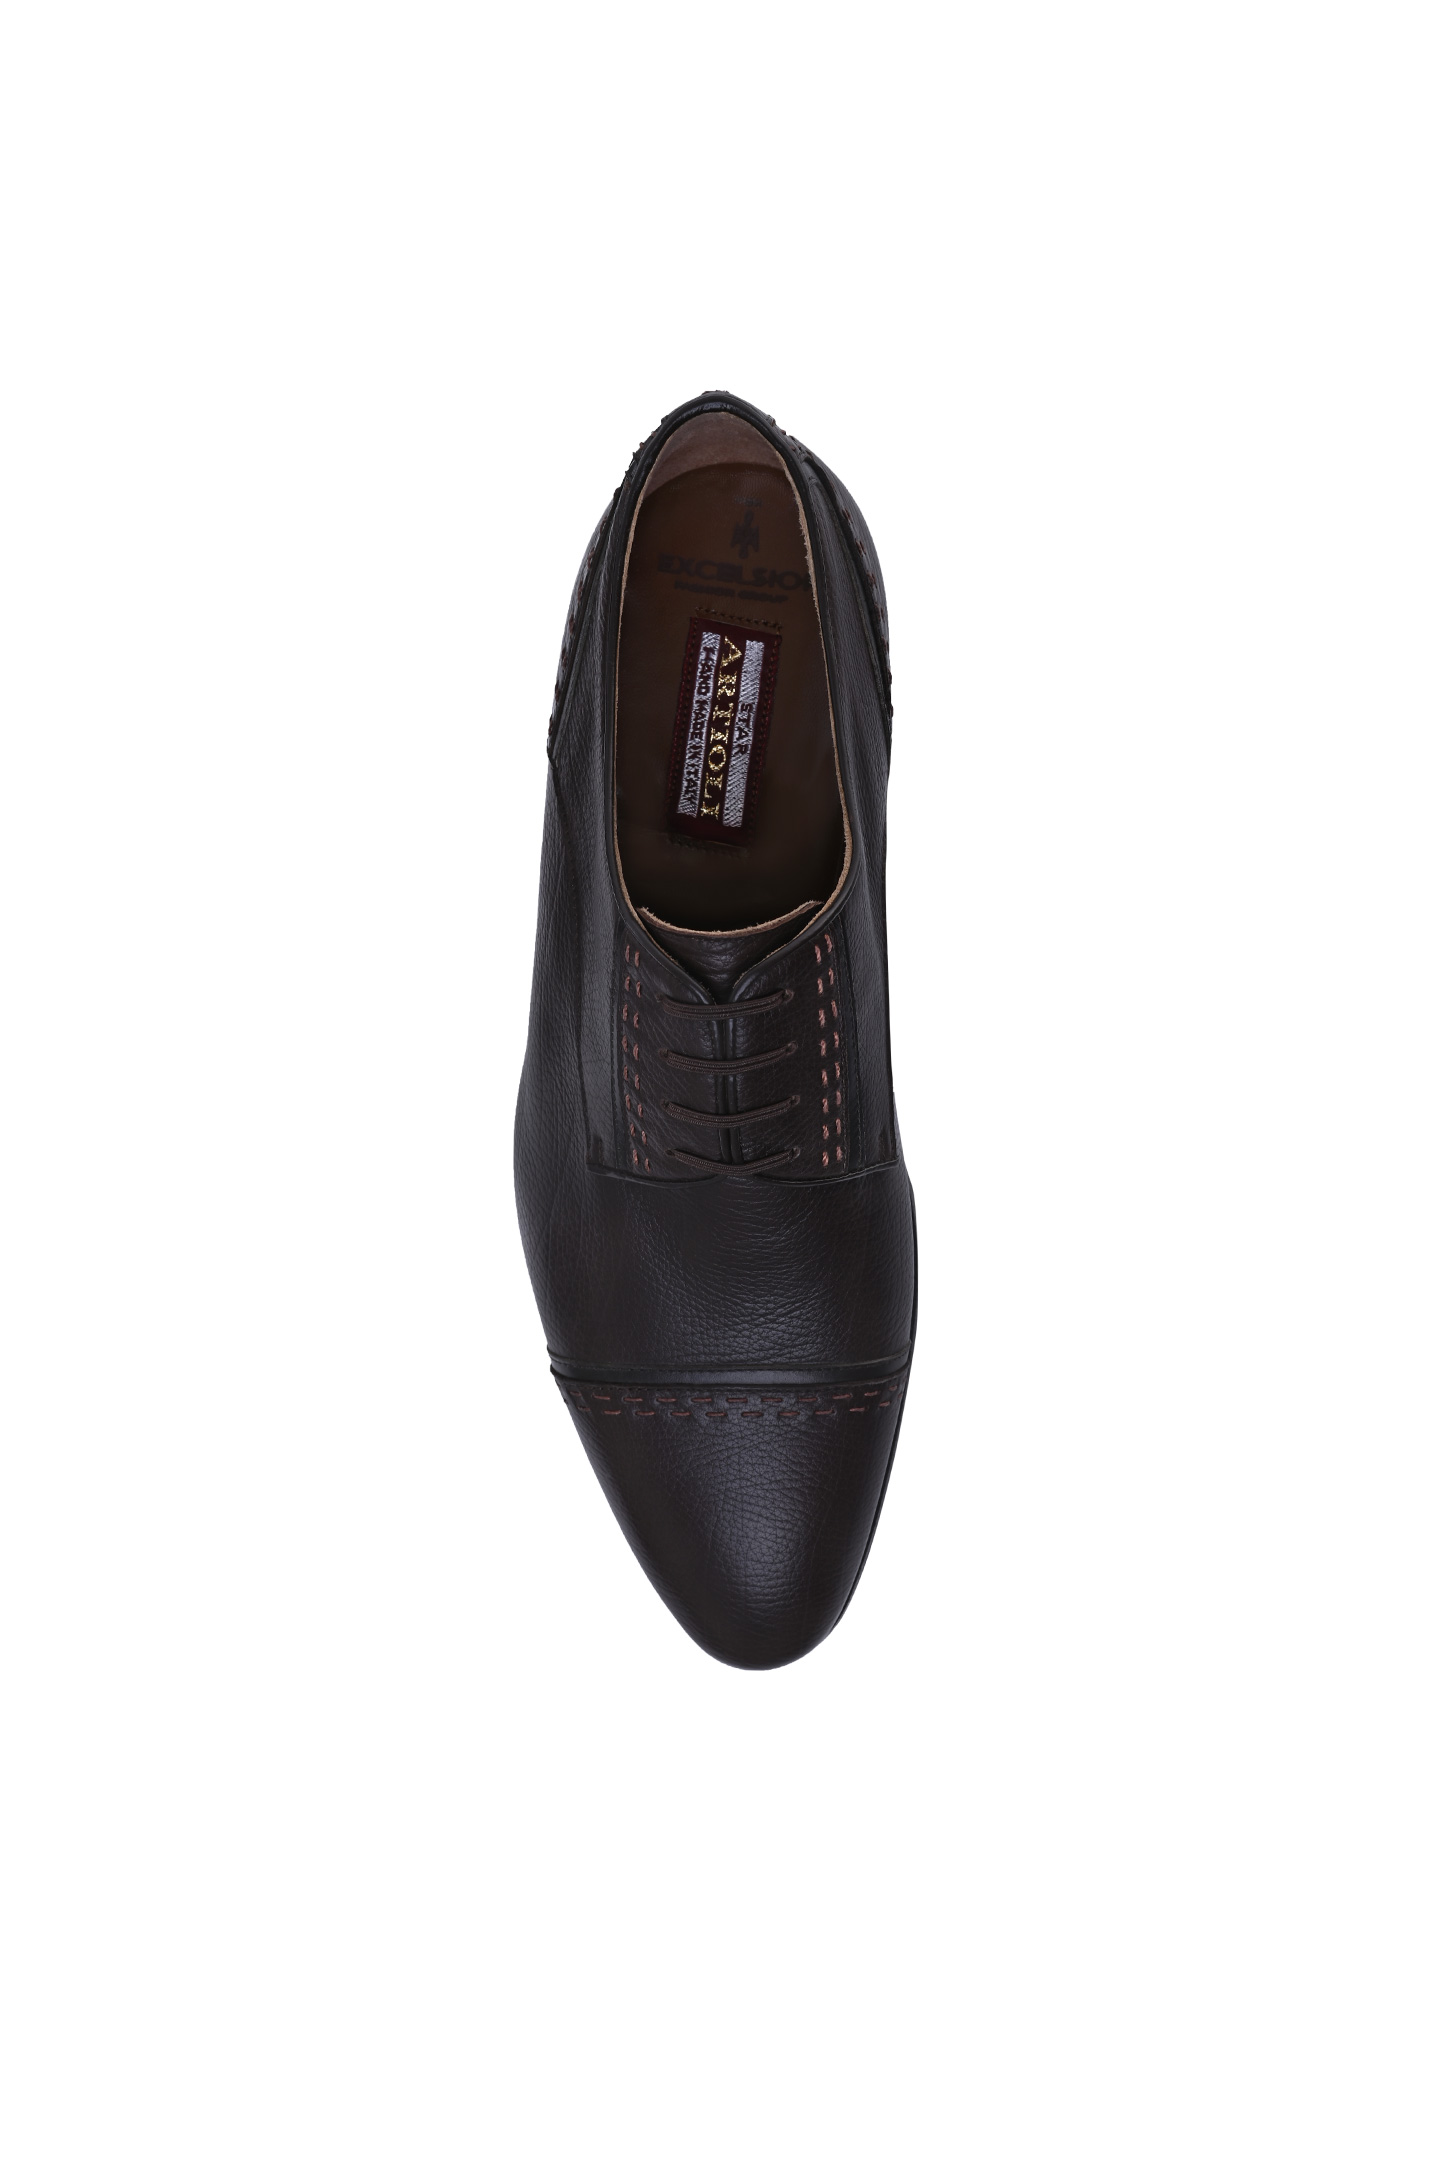 Туфли ARTIOLI 06S479, цвет: Темно-коричневый, Мужской